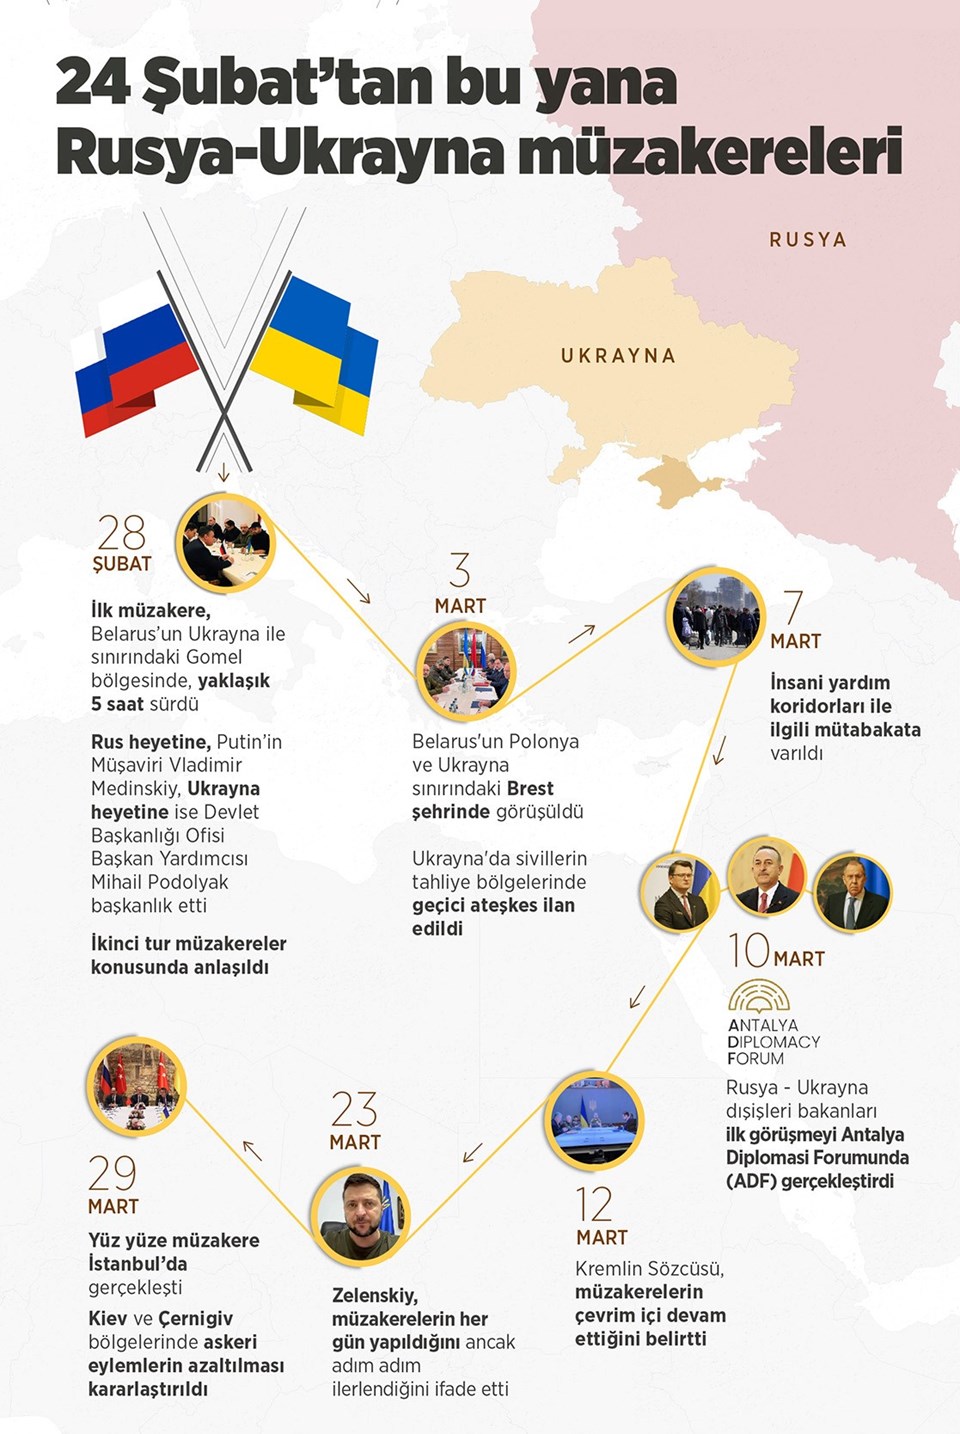 Rusya ve Ukrayna şimdiye kadar 7 kez müzakere yapıldı.